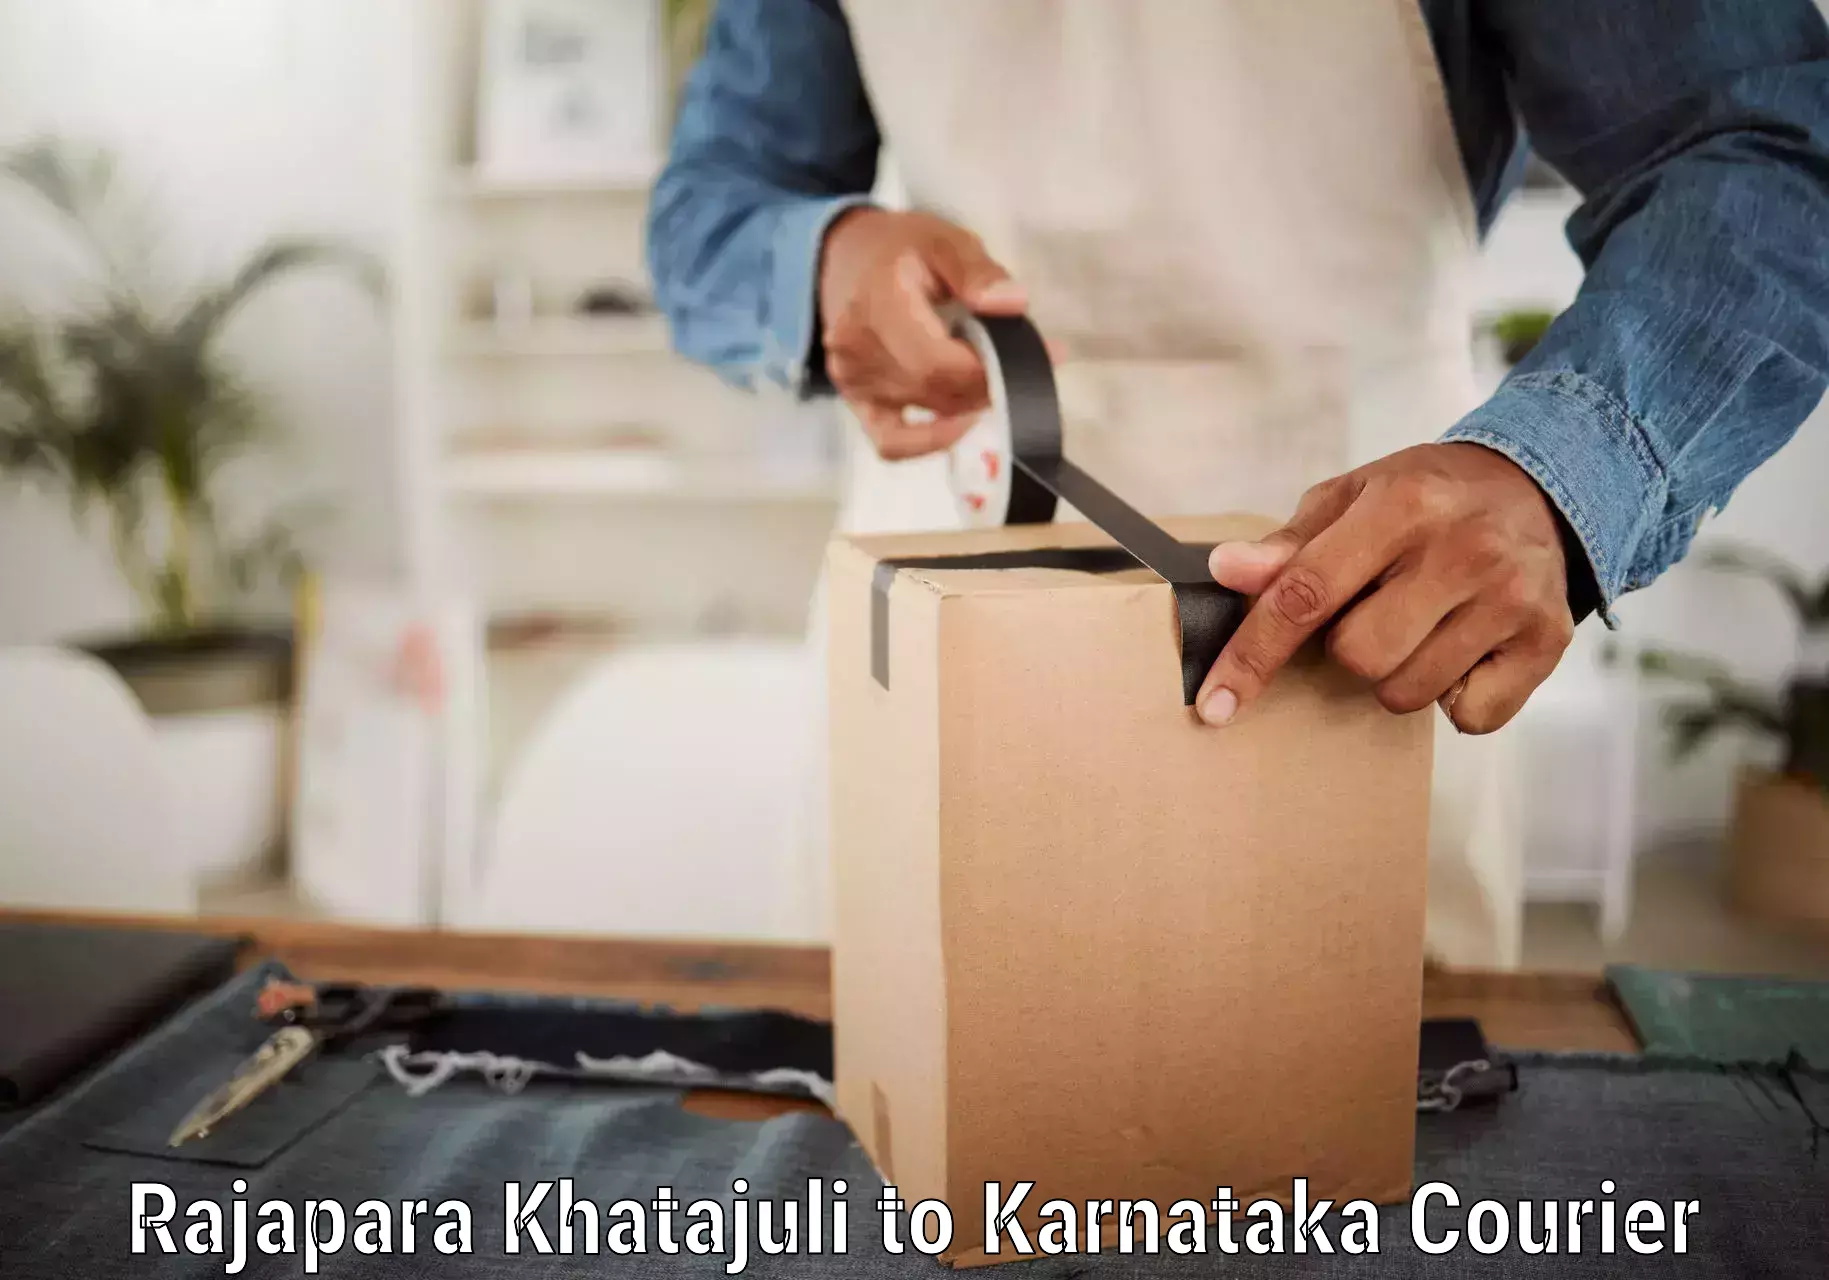 Large package courier Rajapara Khatajuli to Yenepoya Mangalore